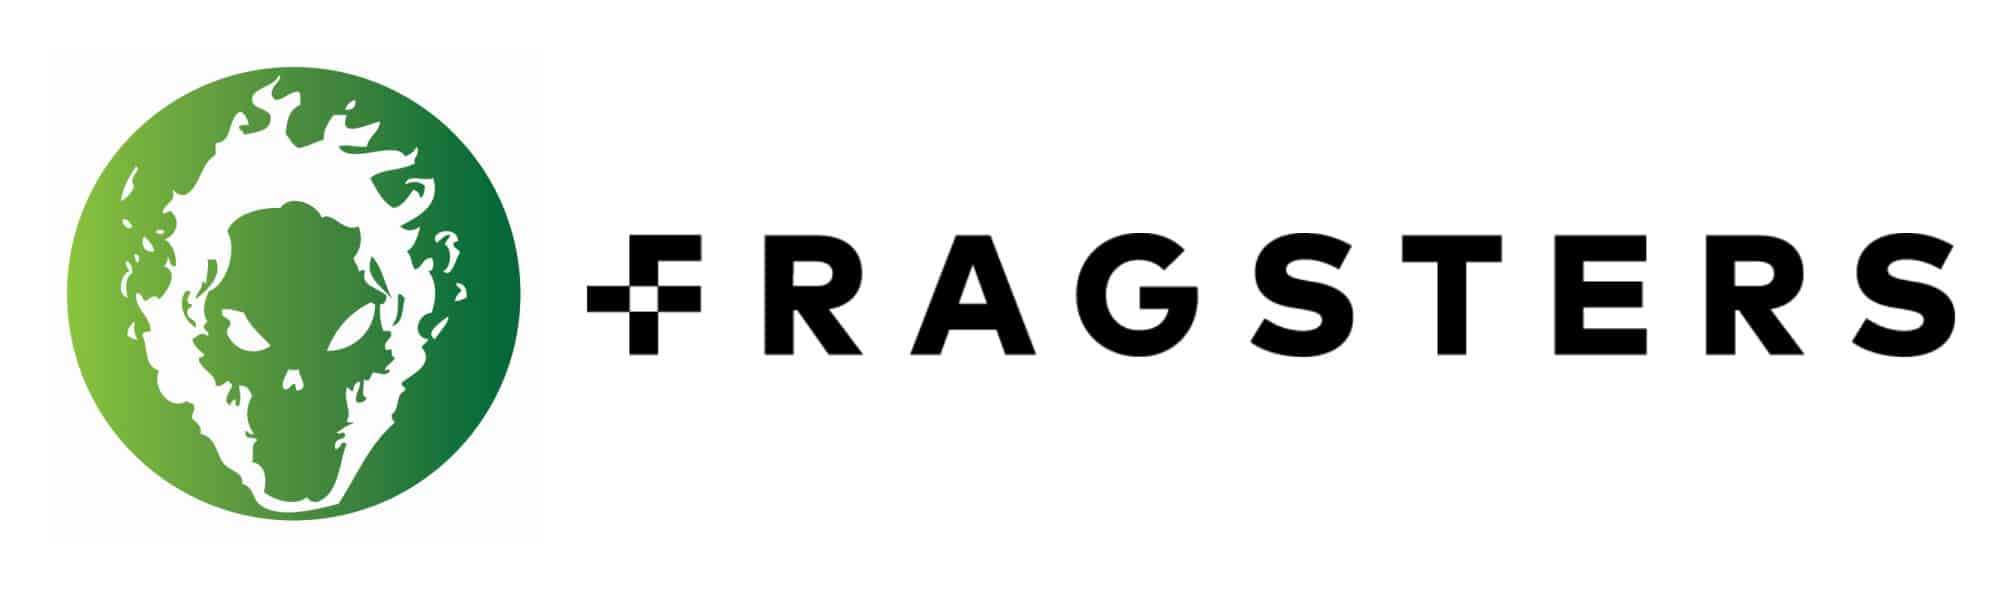 HTTP Logo - Fragsters - logo kit